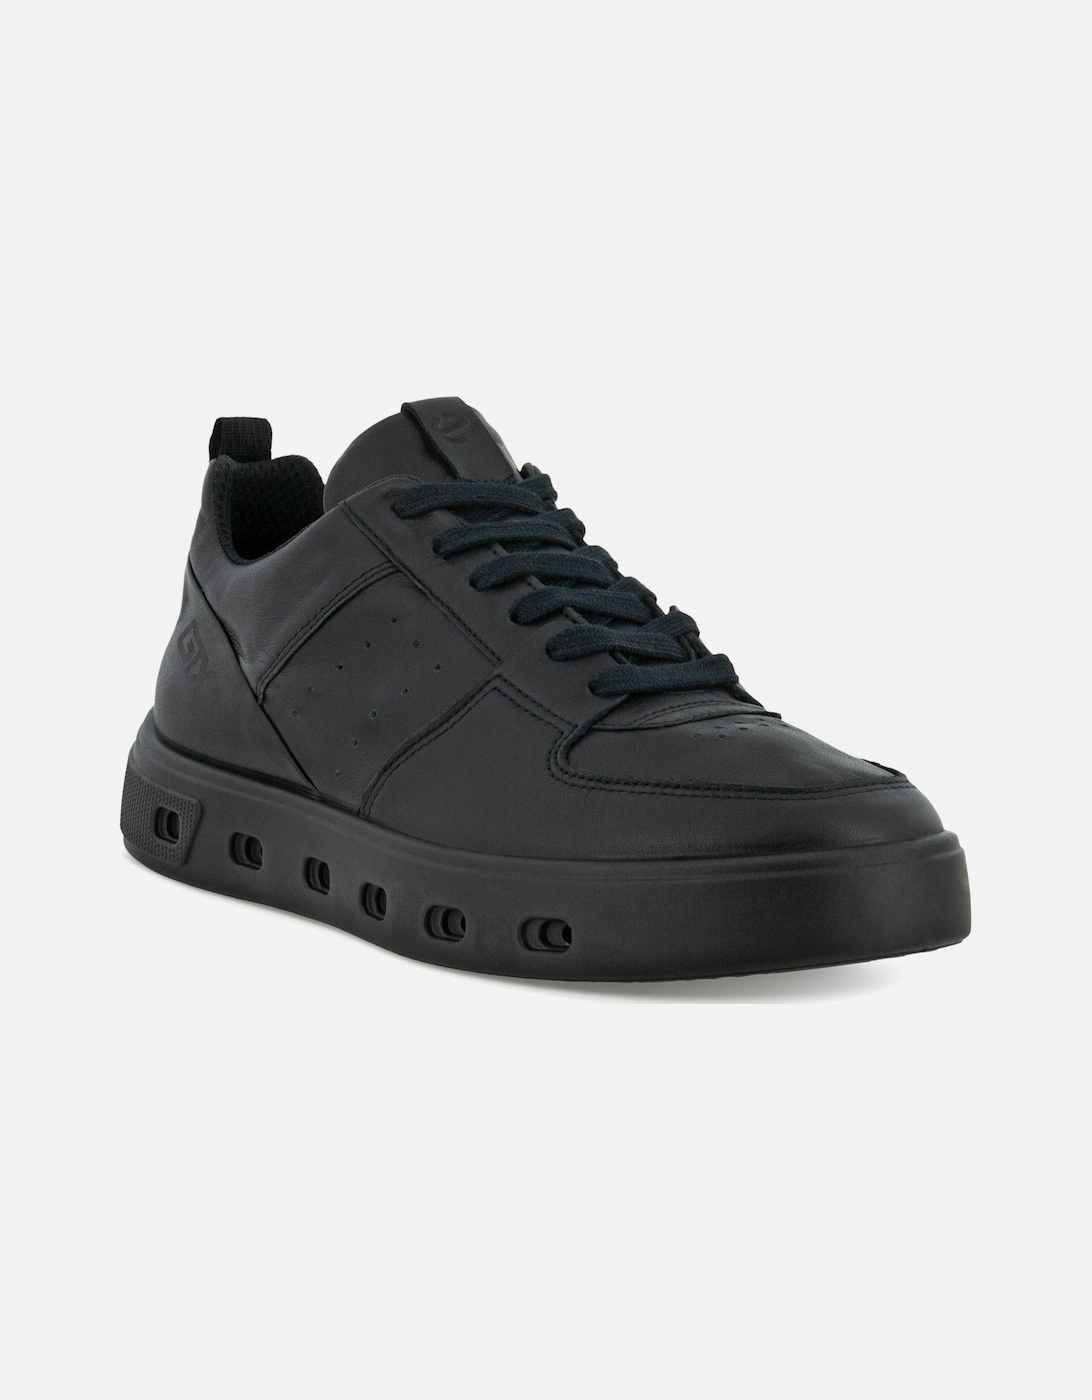 Street 720W sneaker 209713-01001 in Black leather, 7 of 6